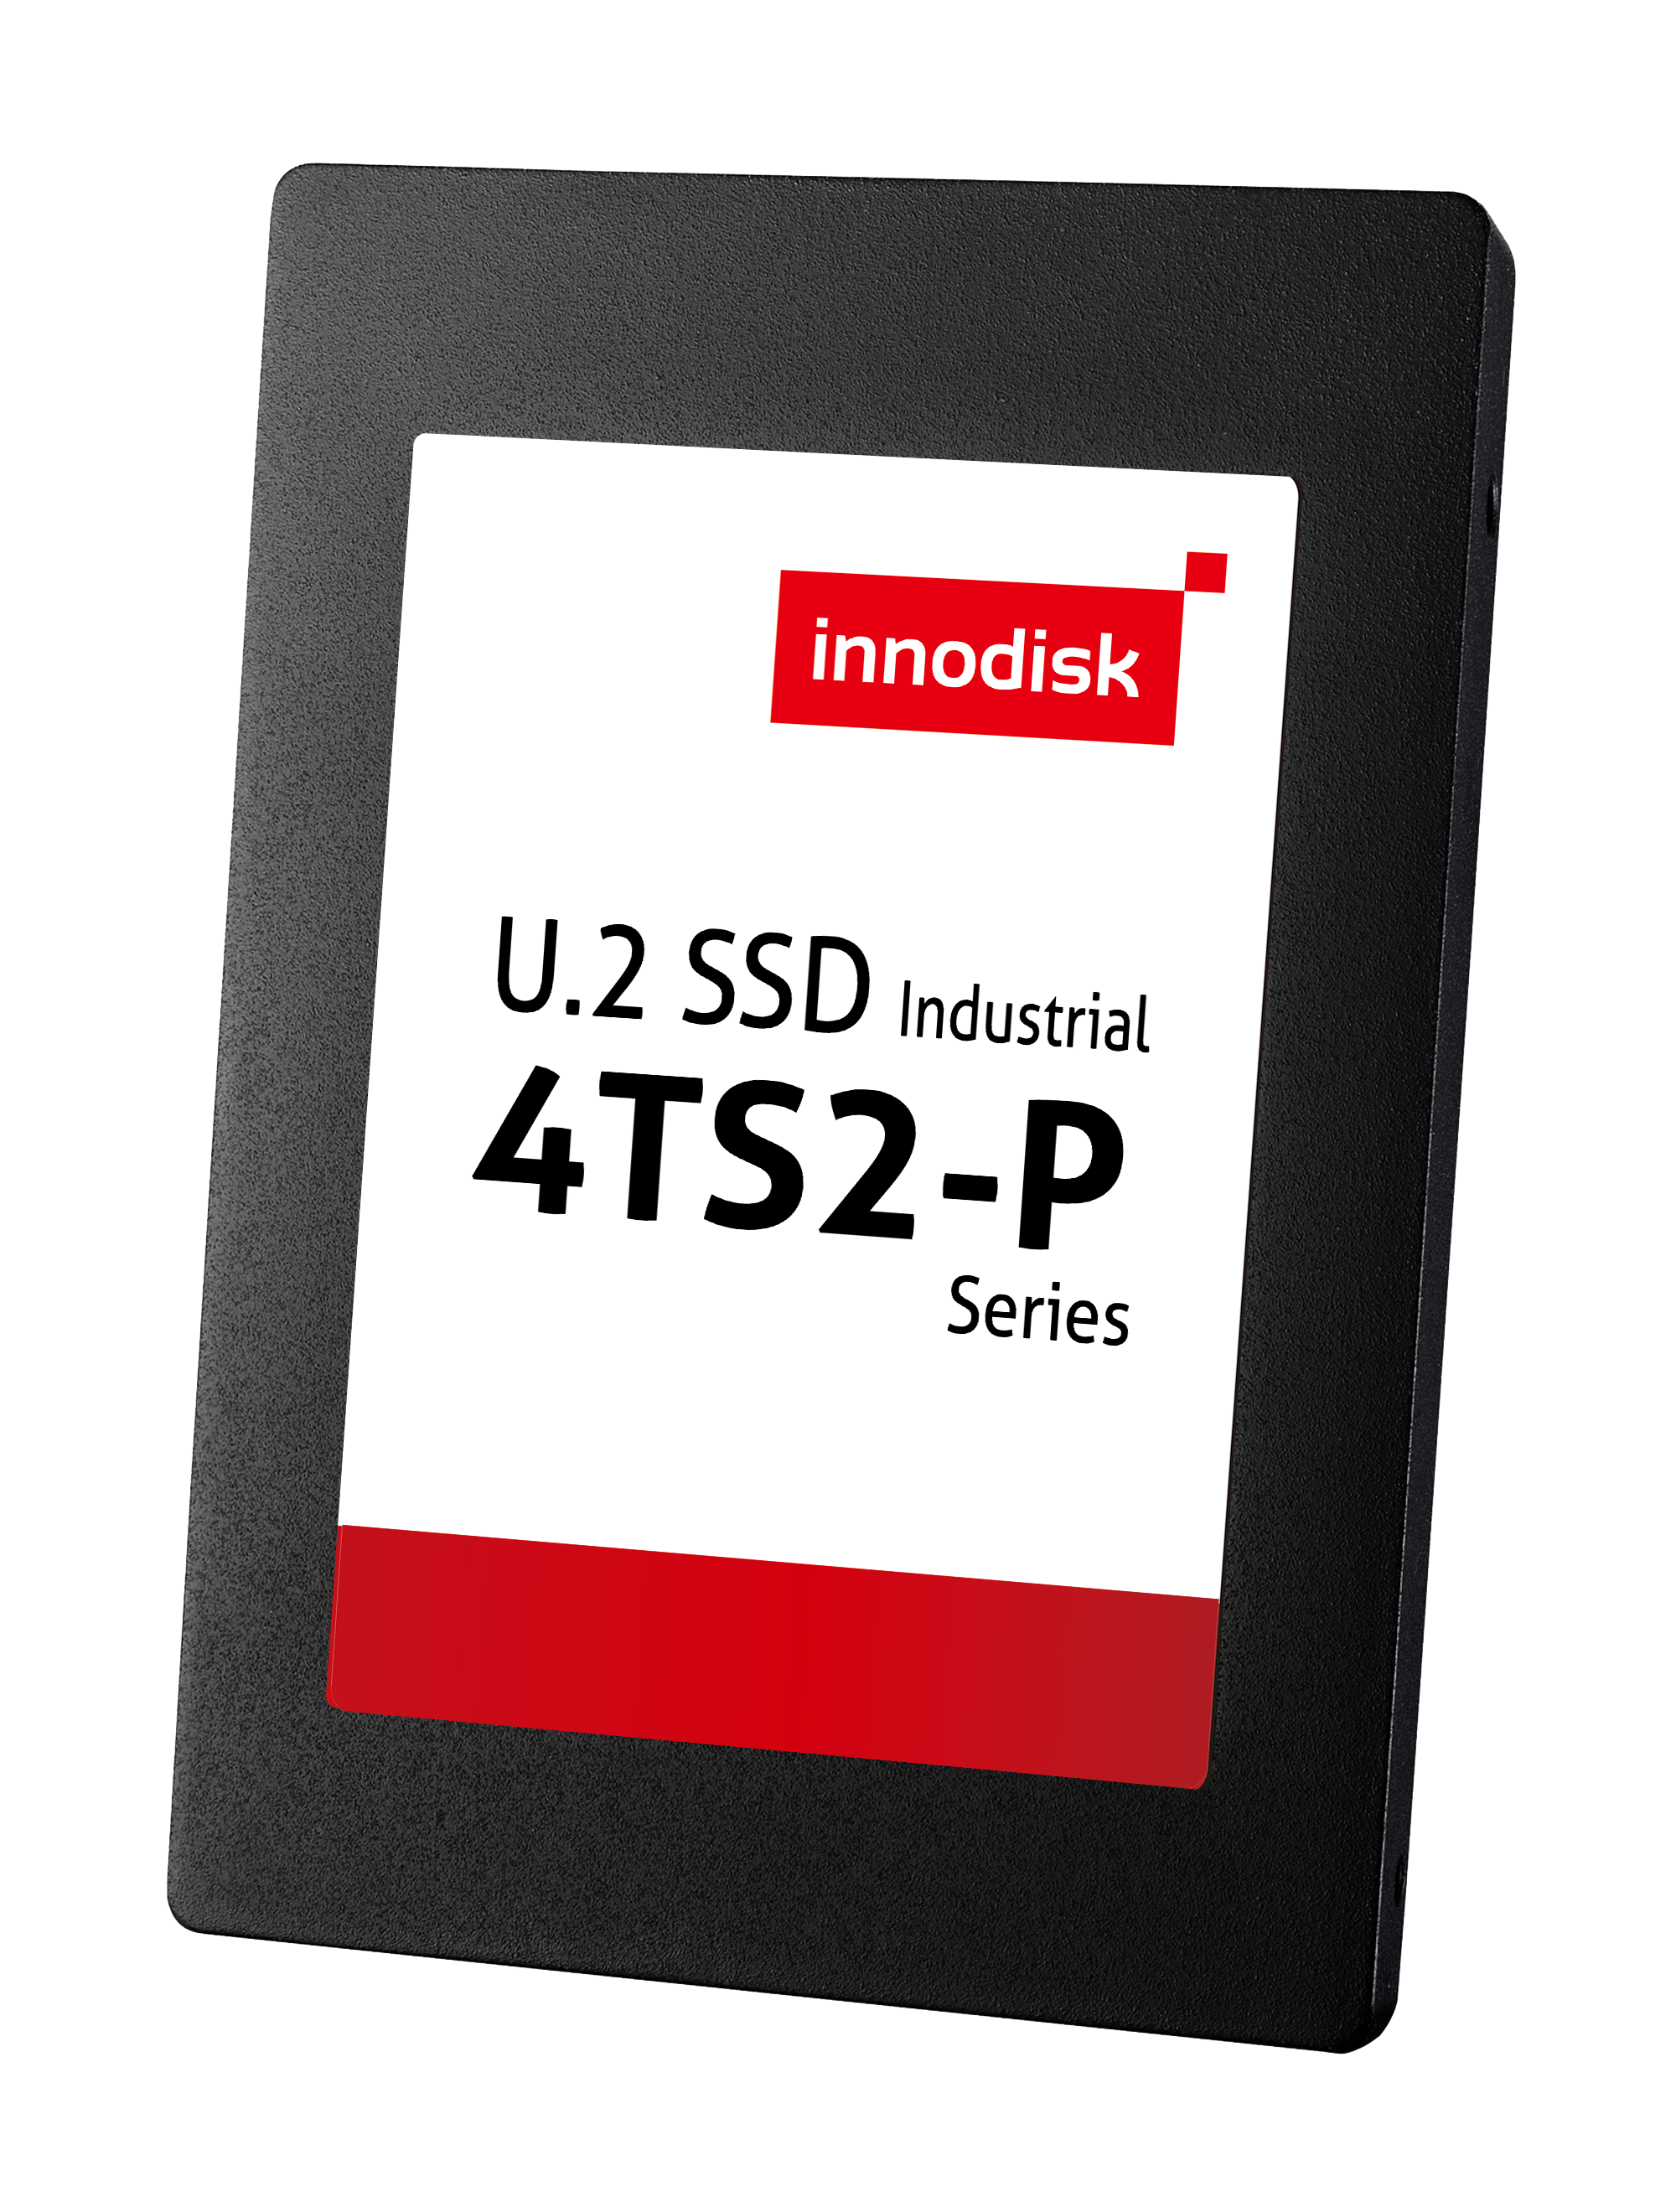 U.2 SSD 4TS2-P